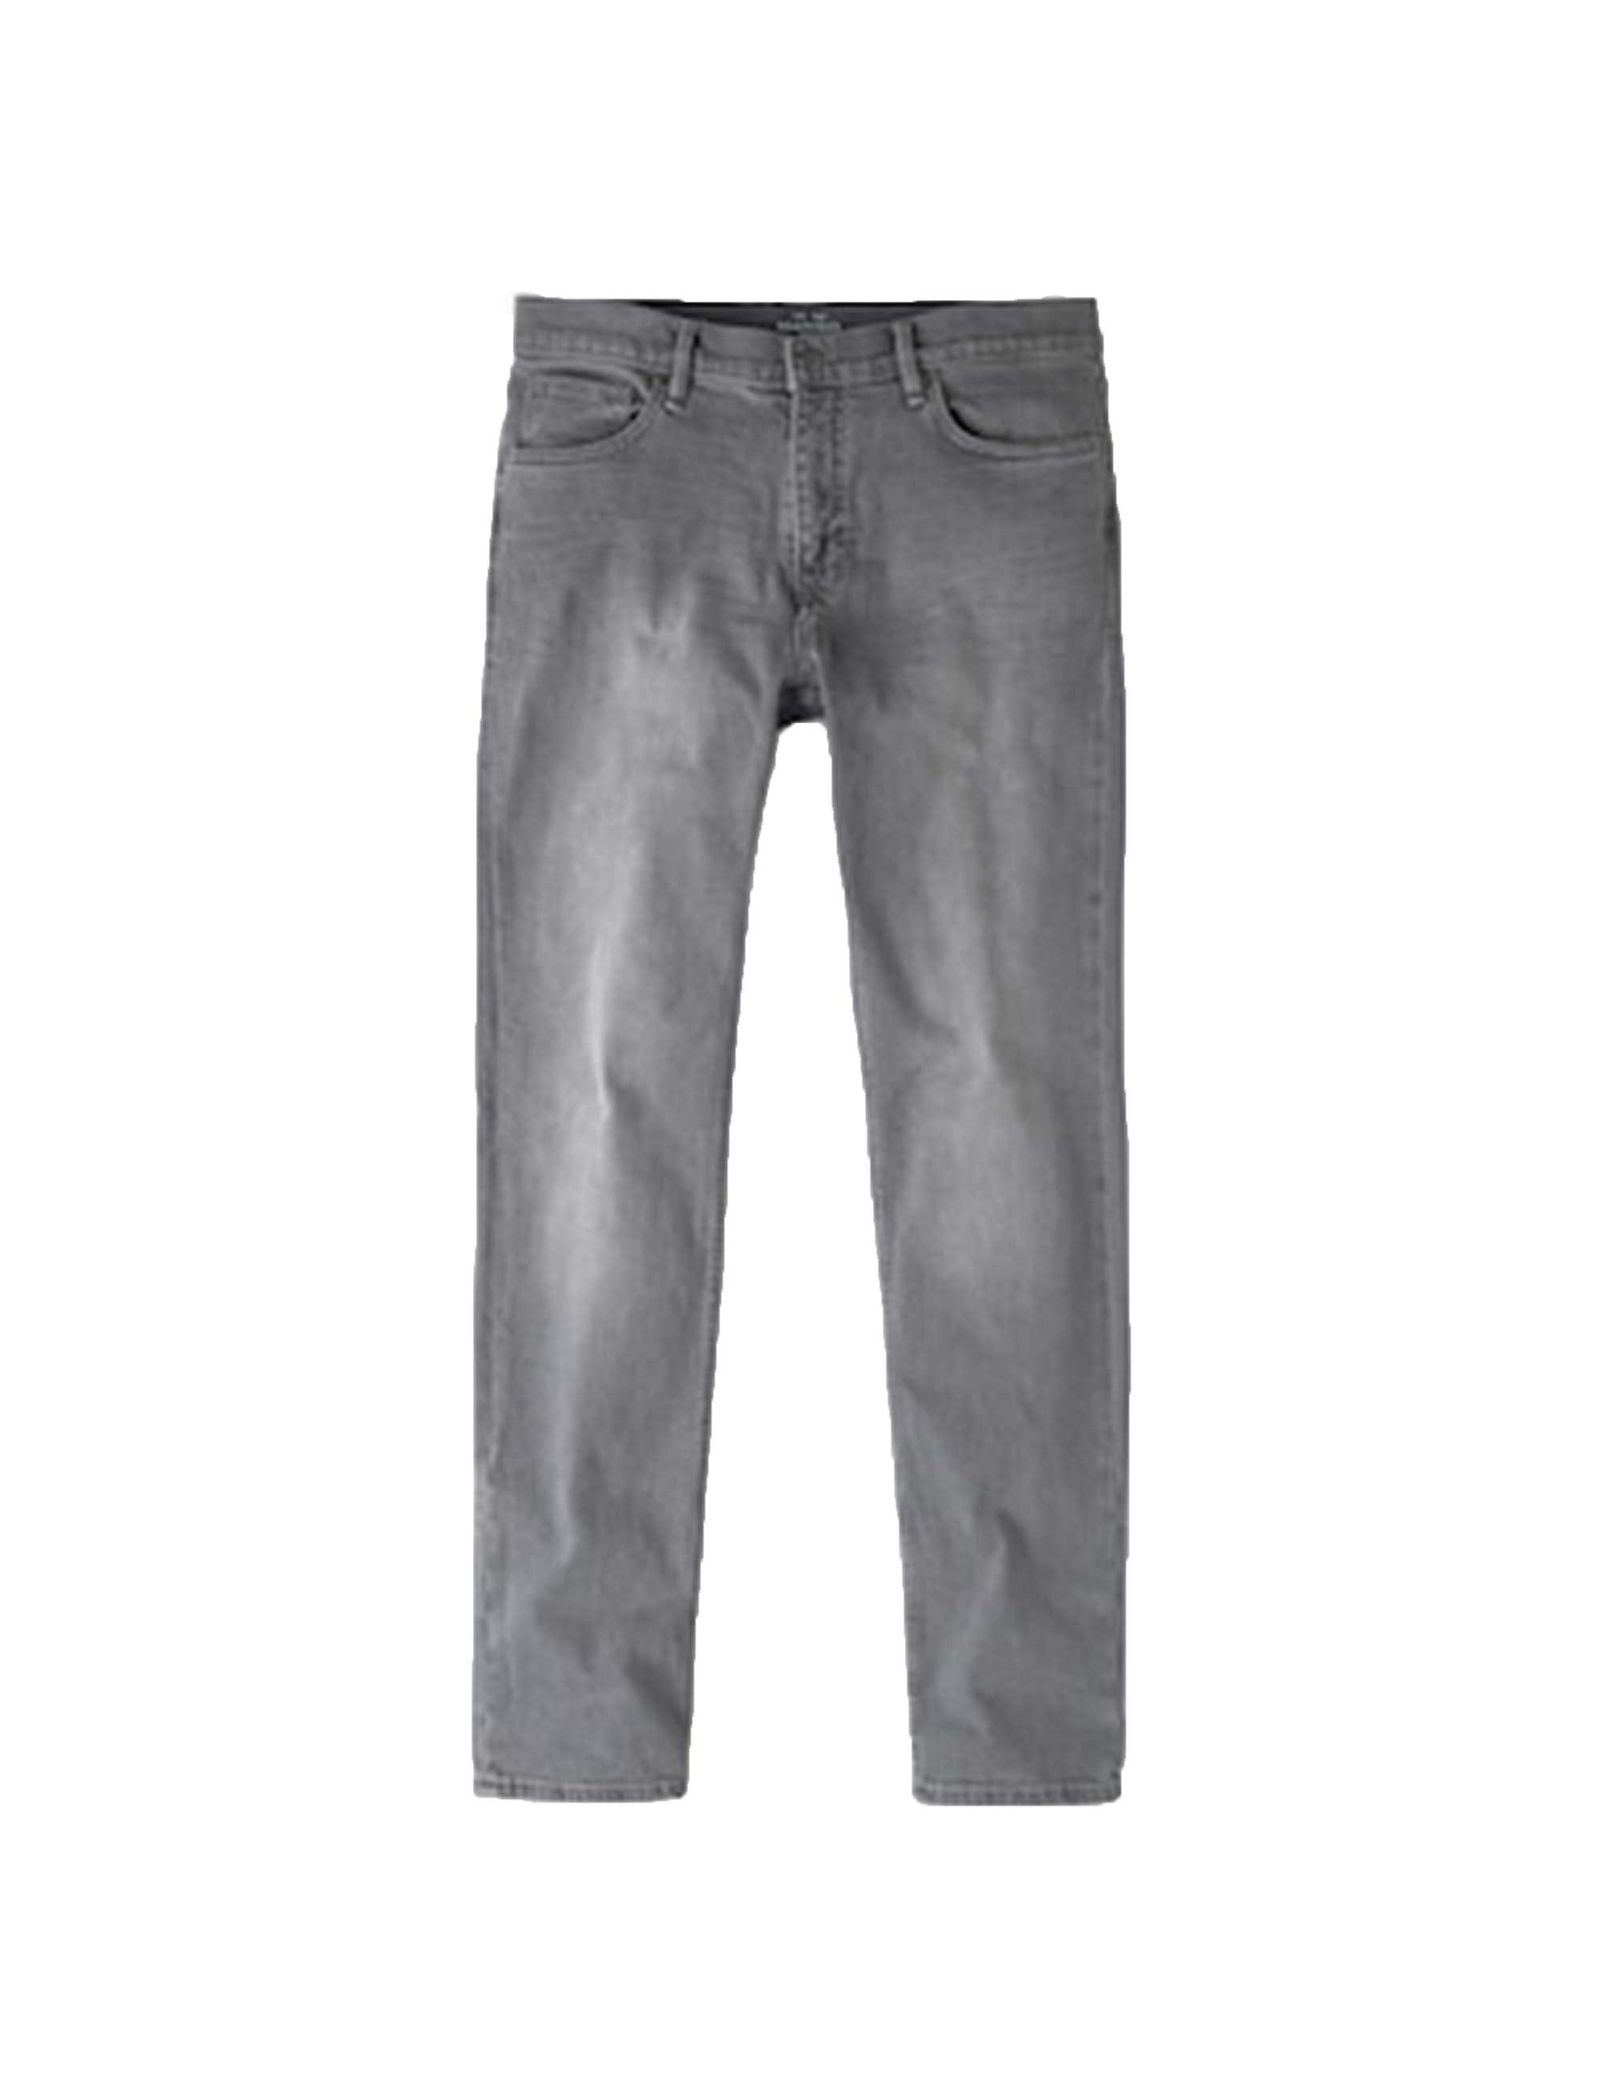 شلوار جین راسته مردانه - مانگو - طوسي - 2